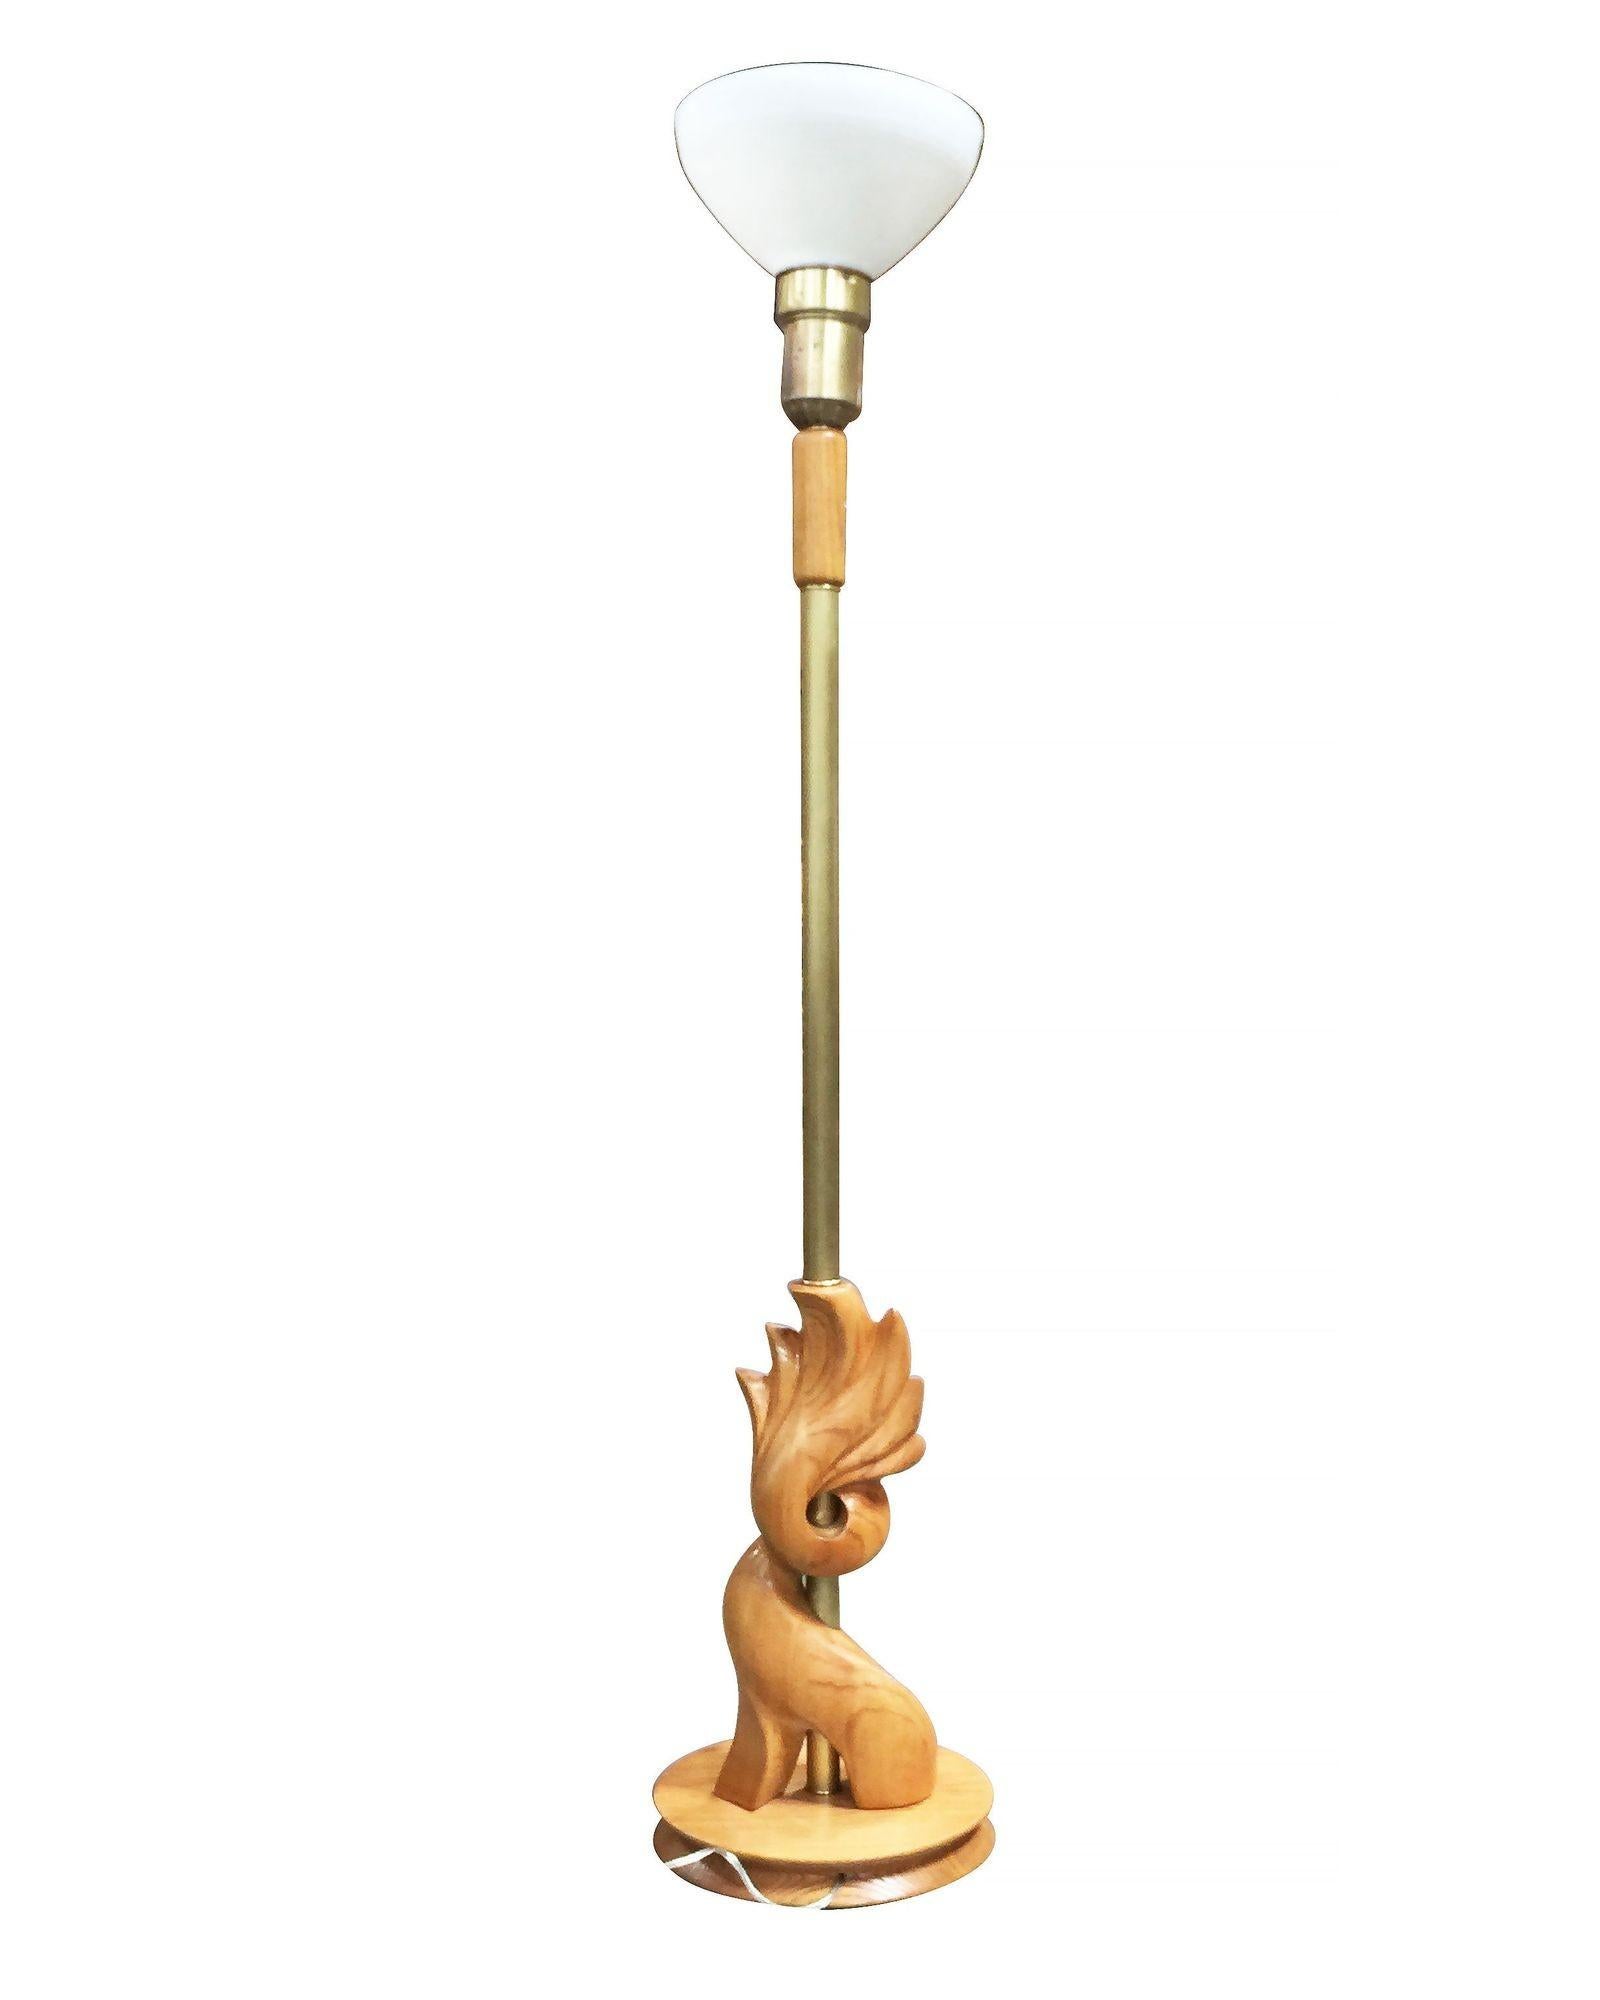 Heifetz Stil Mid-Century handgeschnitzten Holz Fackel Stehlampe Paar mit Milchglas Schirme und Messing Akzente.

